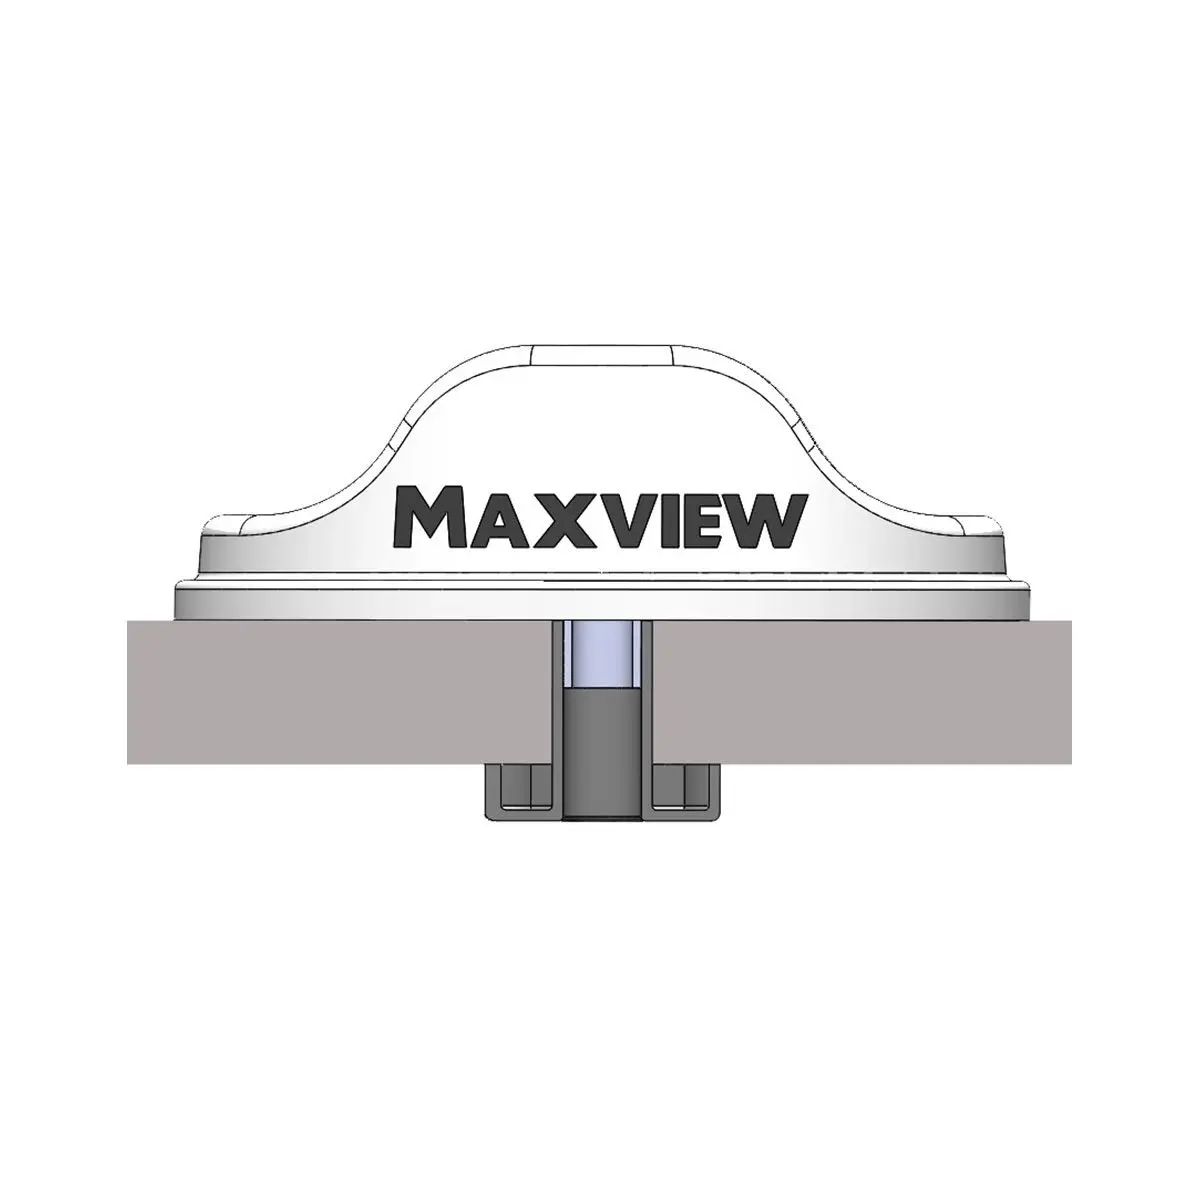 Antenă Maxview Roam LTE/WiFi, albă